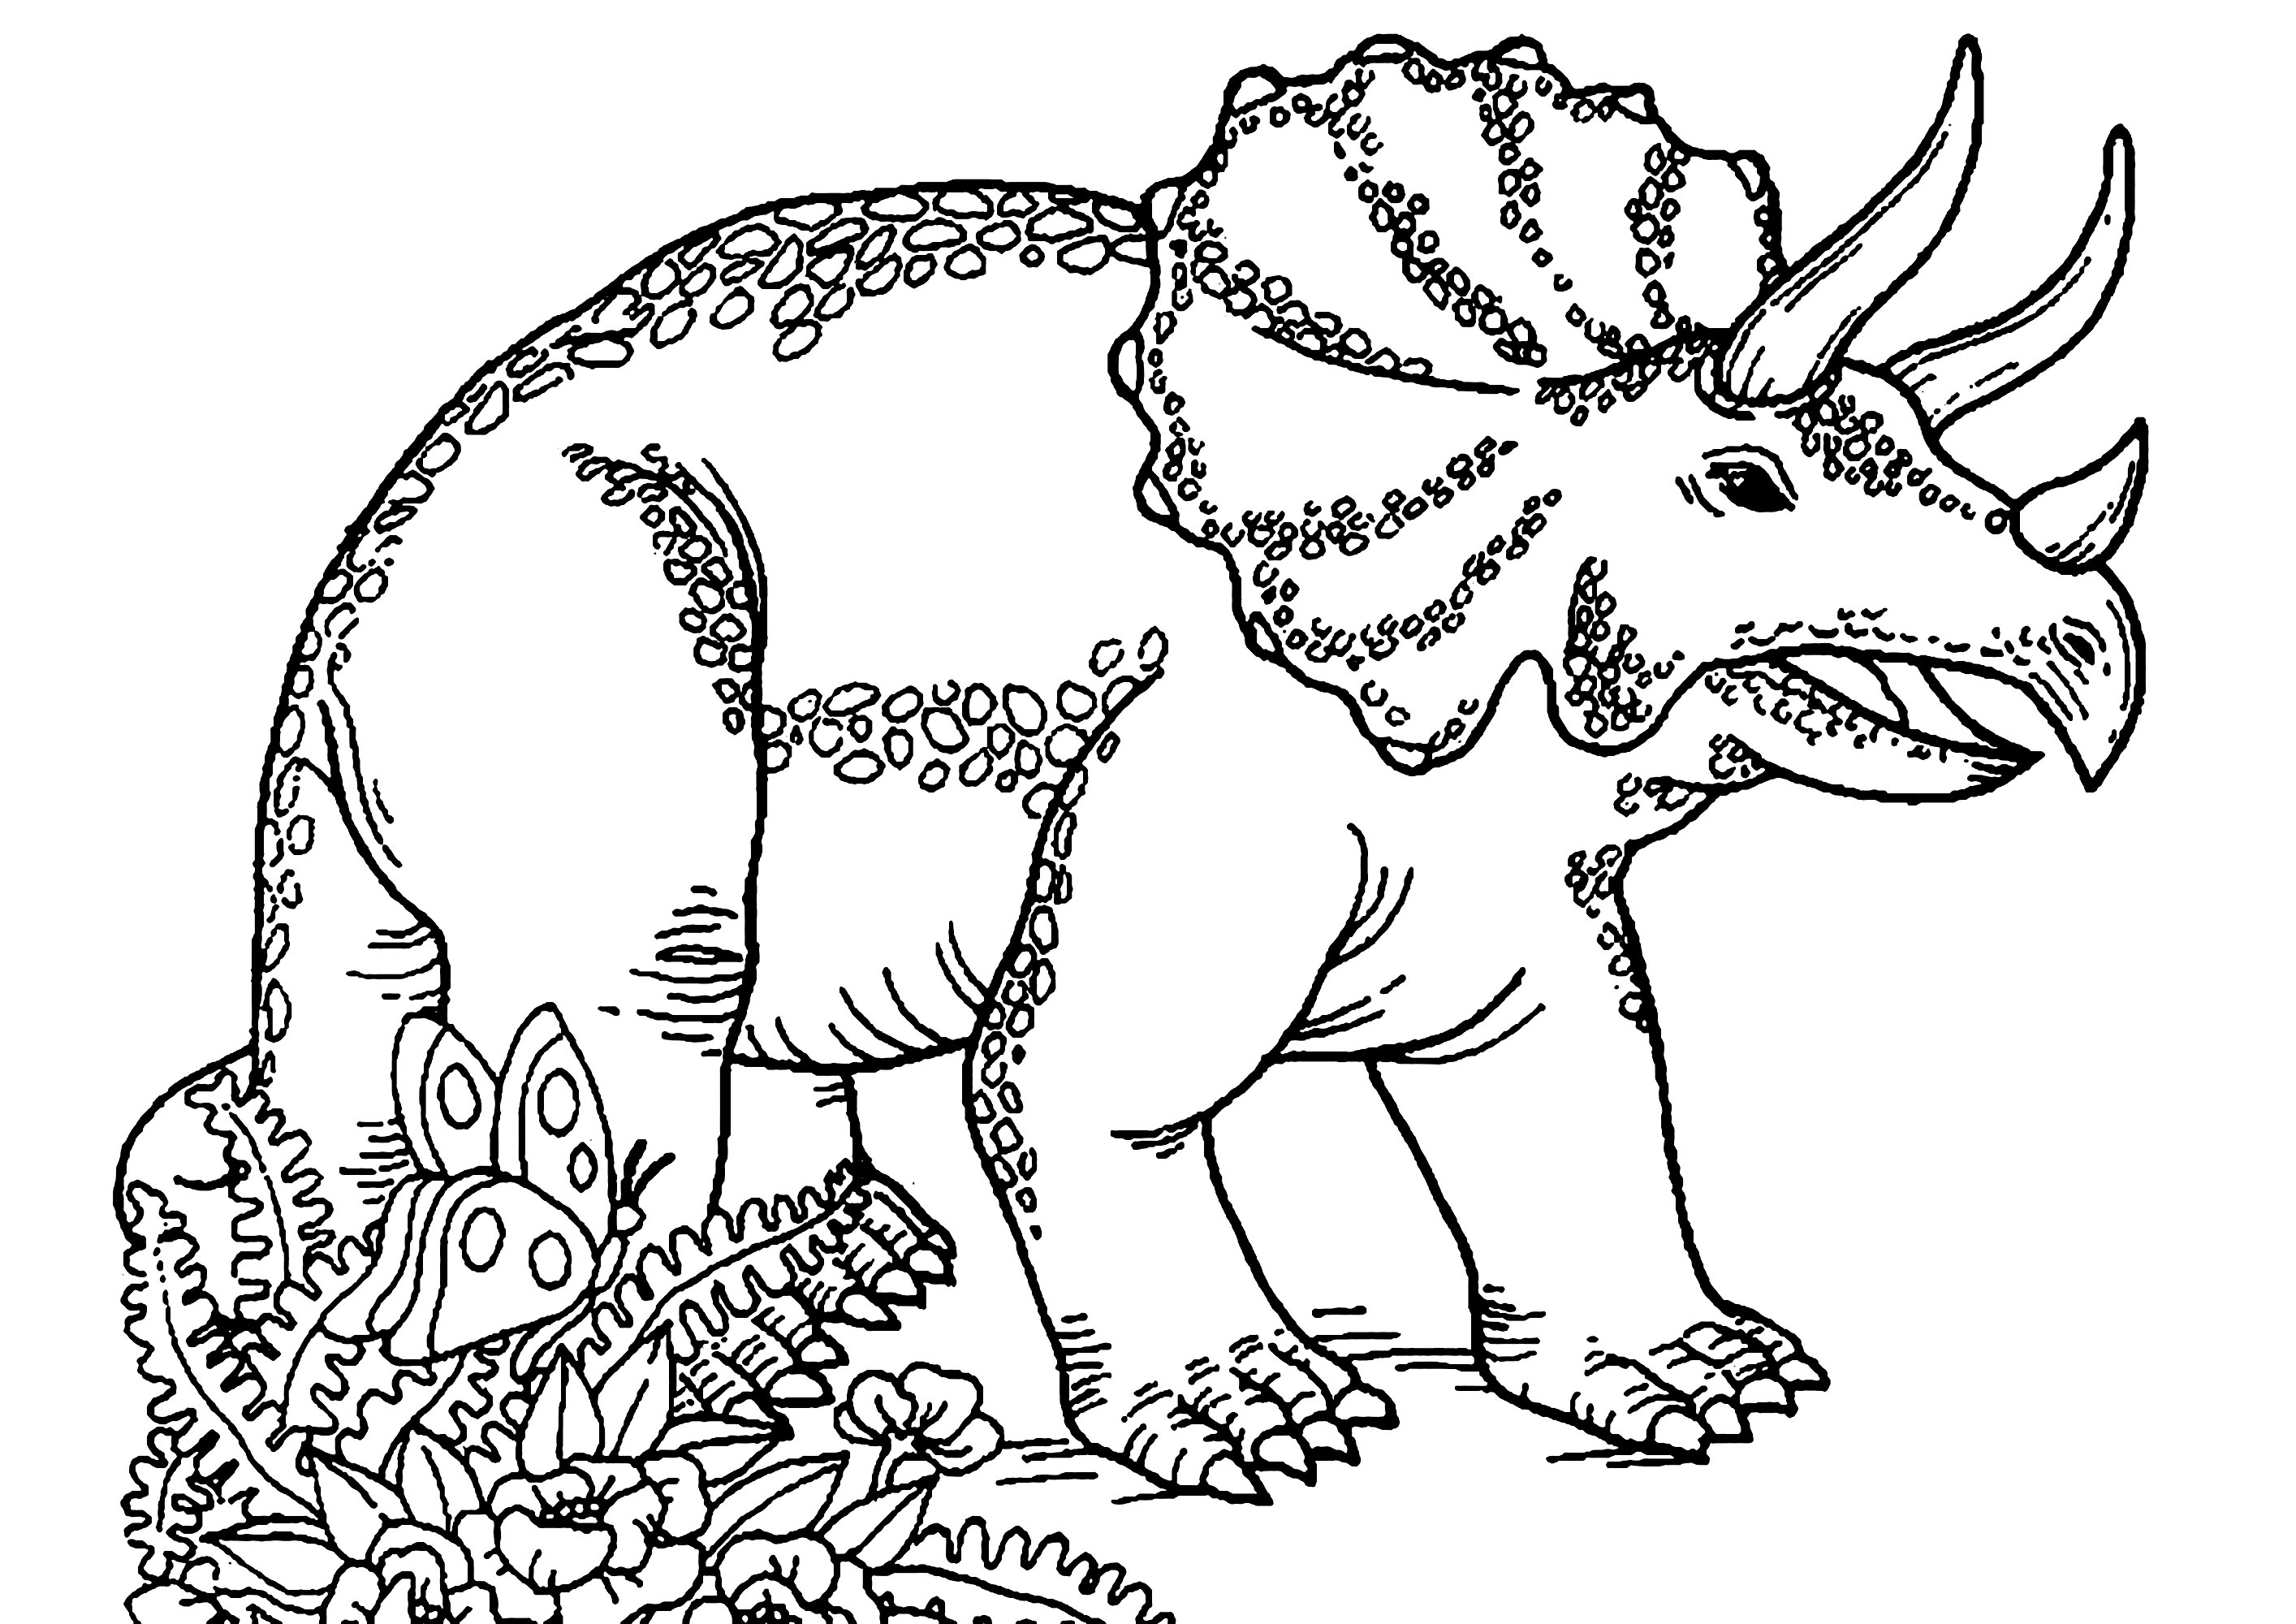 Coloração de um triceratops